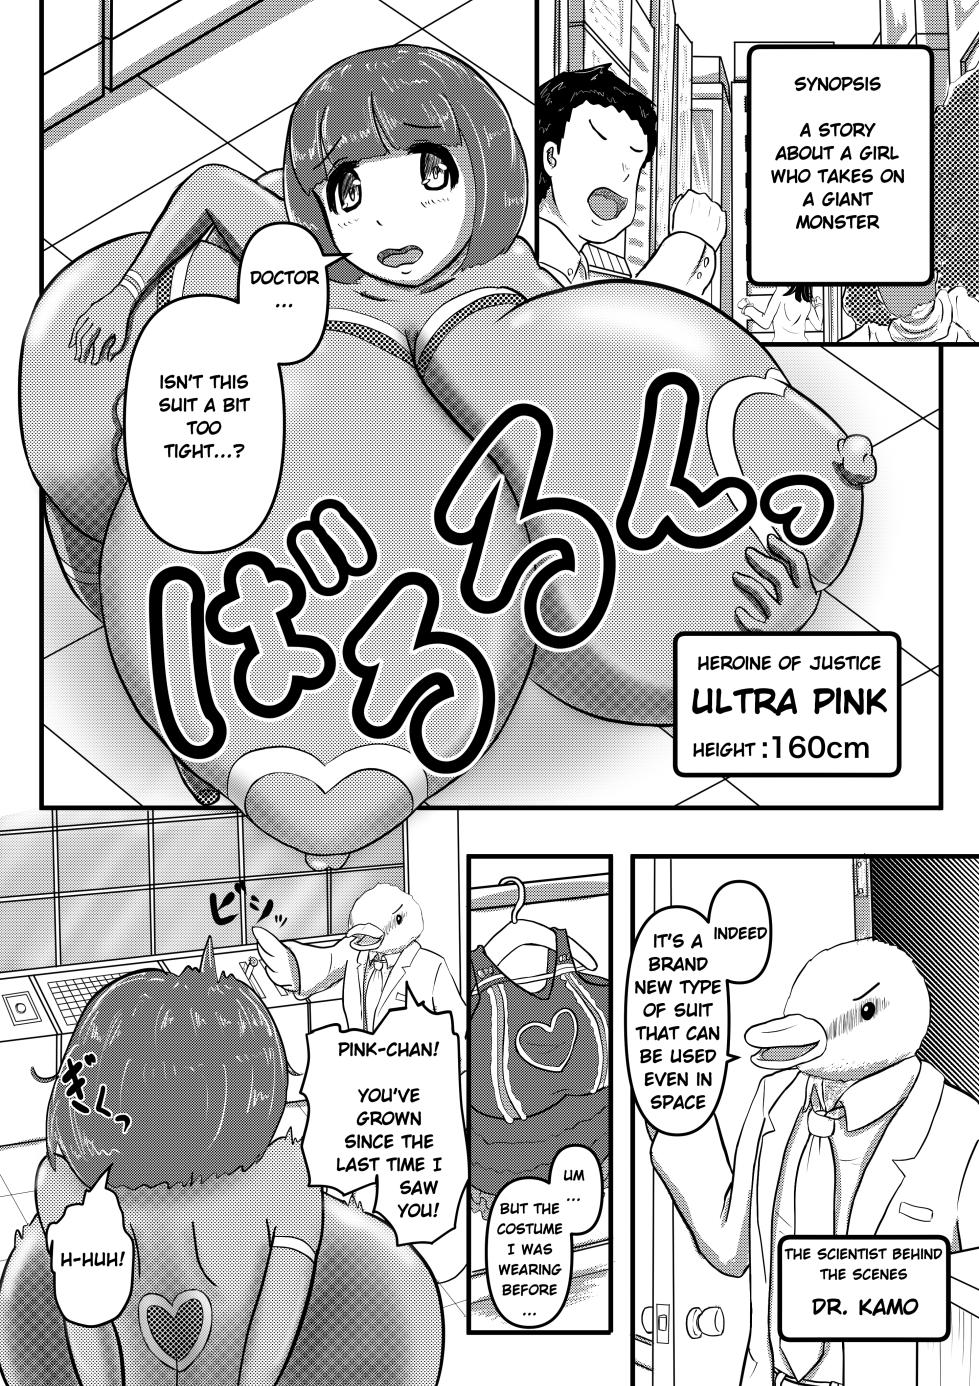 [Karuno Kamo] Ultra Pink vs Giga Roll [English] - Page 1